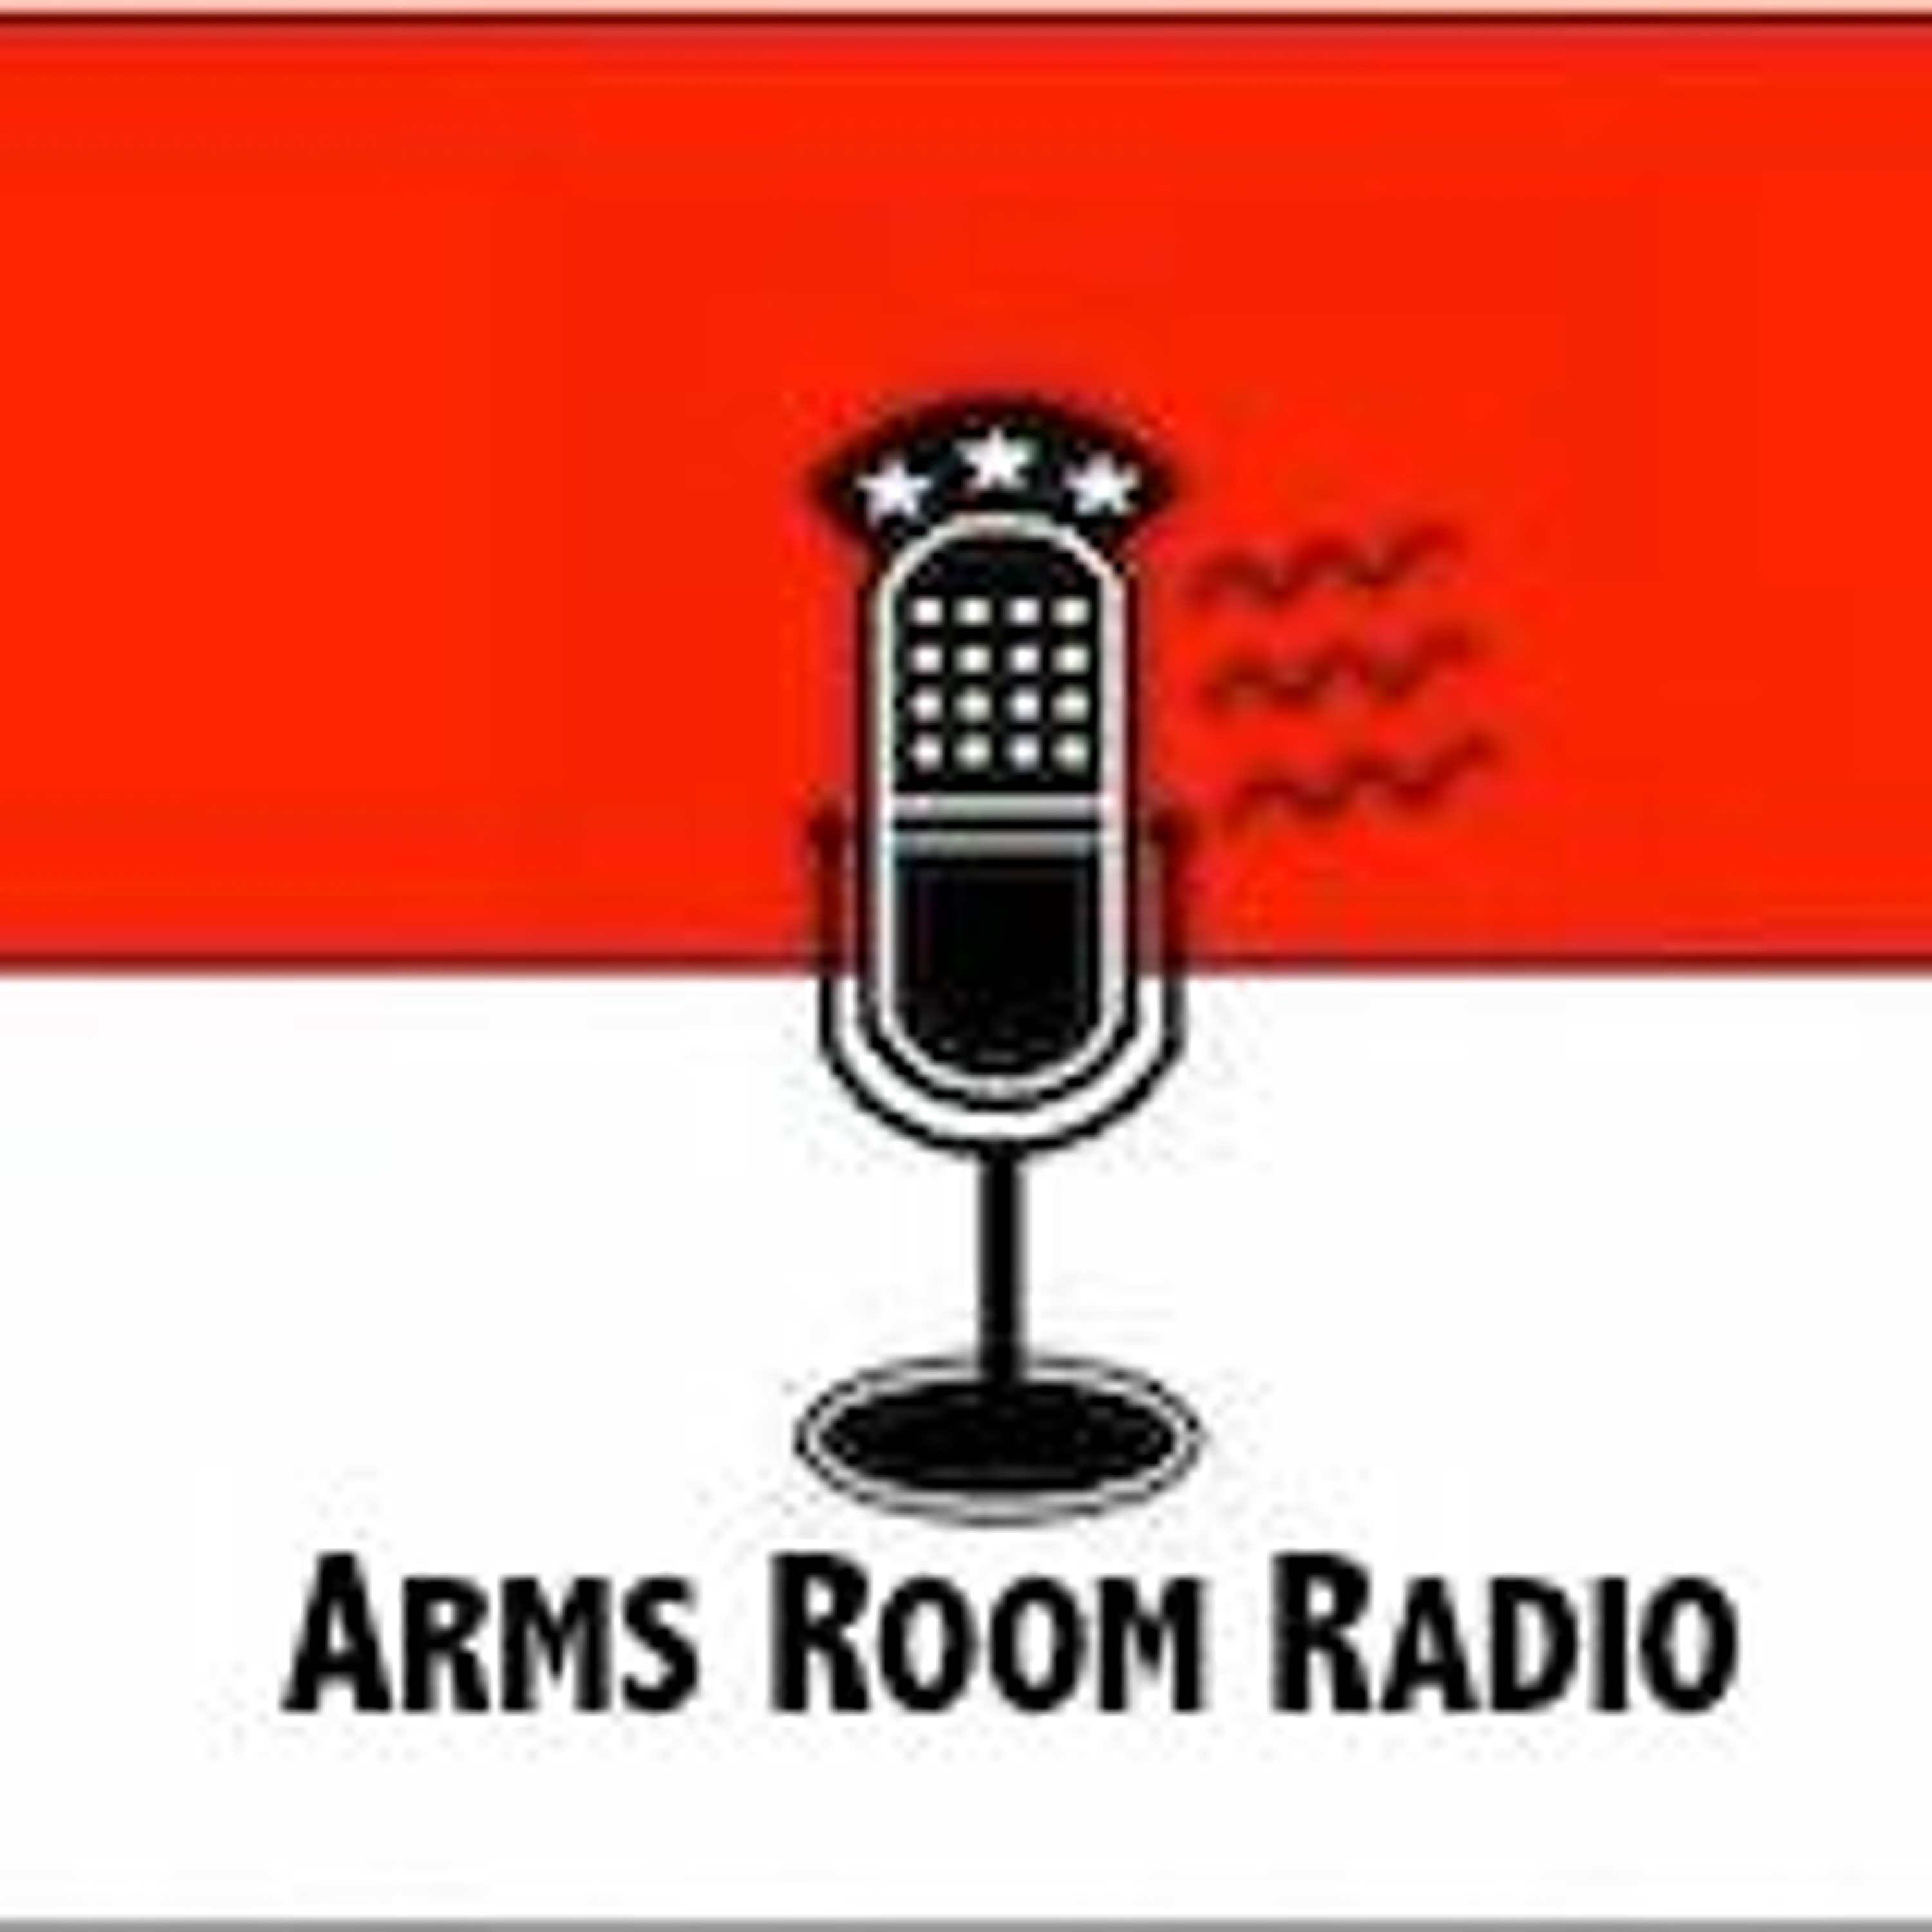 ArmsRoomRadio 12.31.22 Buffalo Lawsuit analysis with Atty Jason Herman